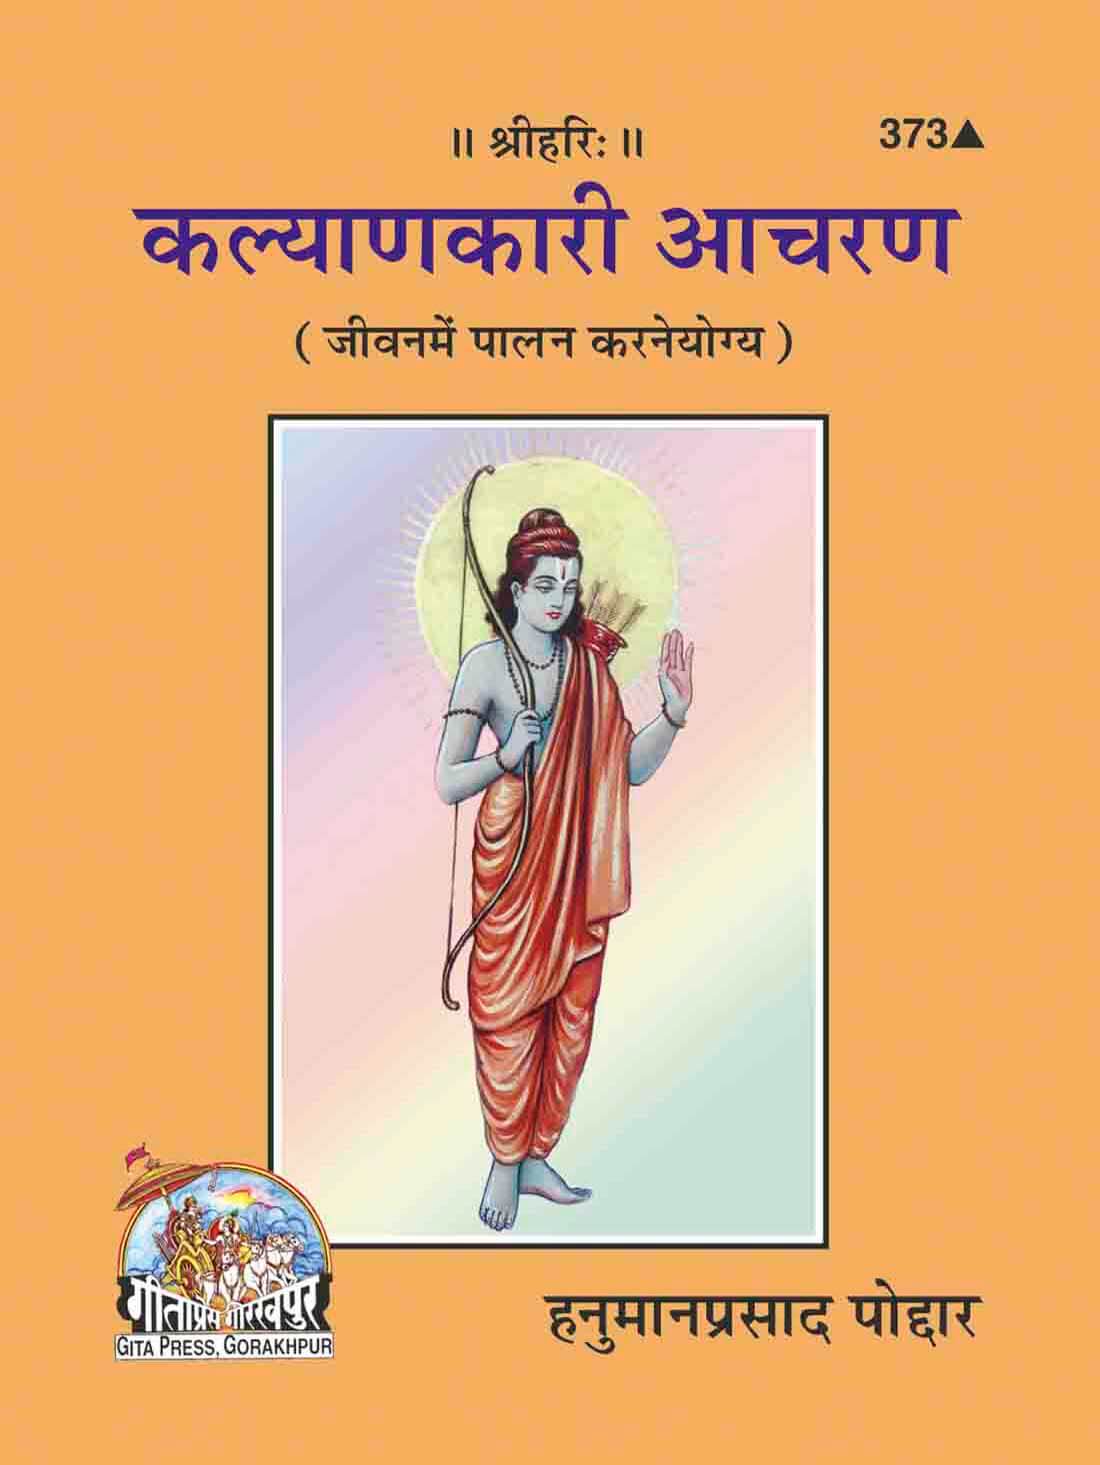 SANATAN  Kalyankari Acharan by Gita Press